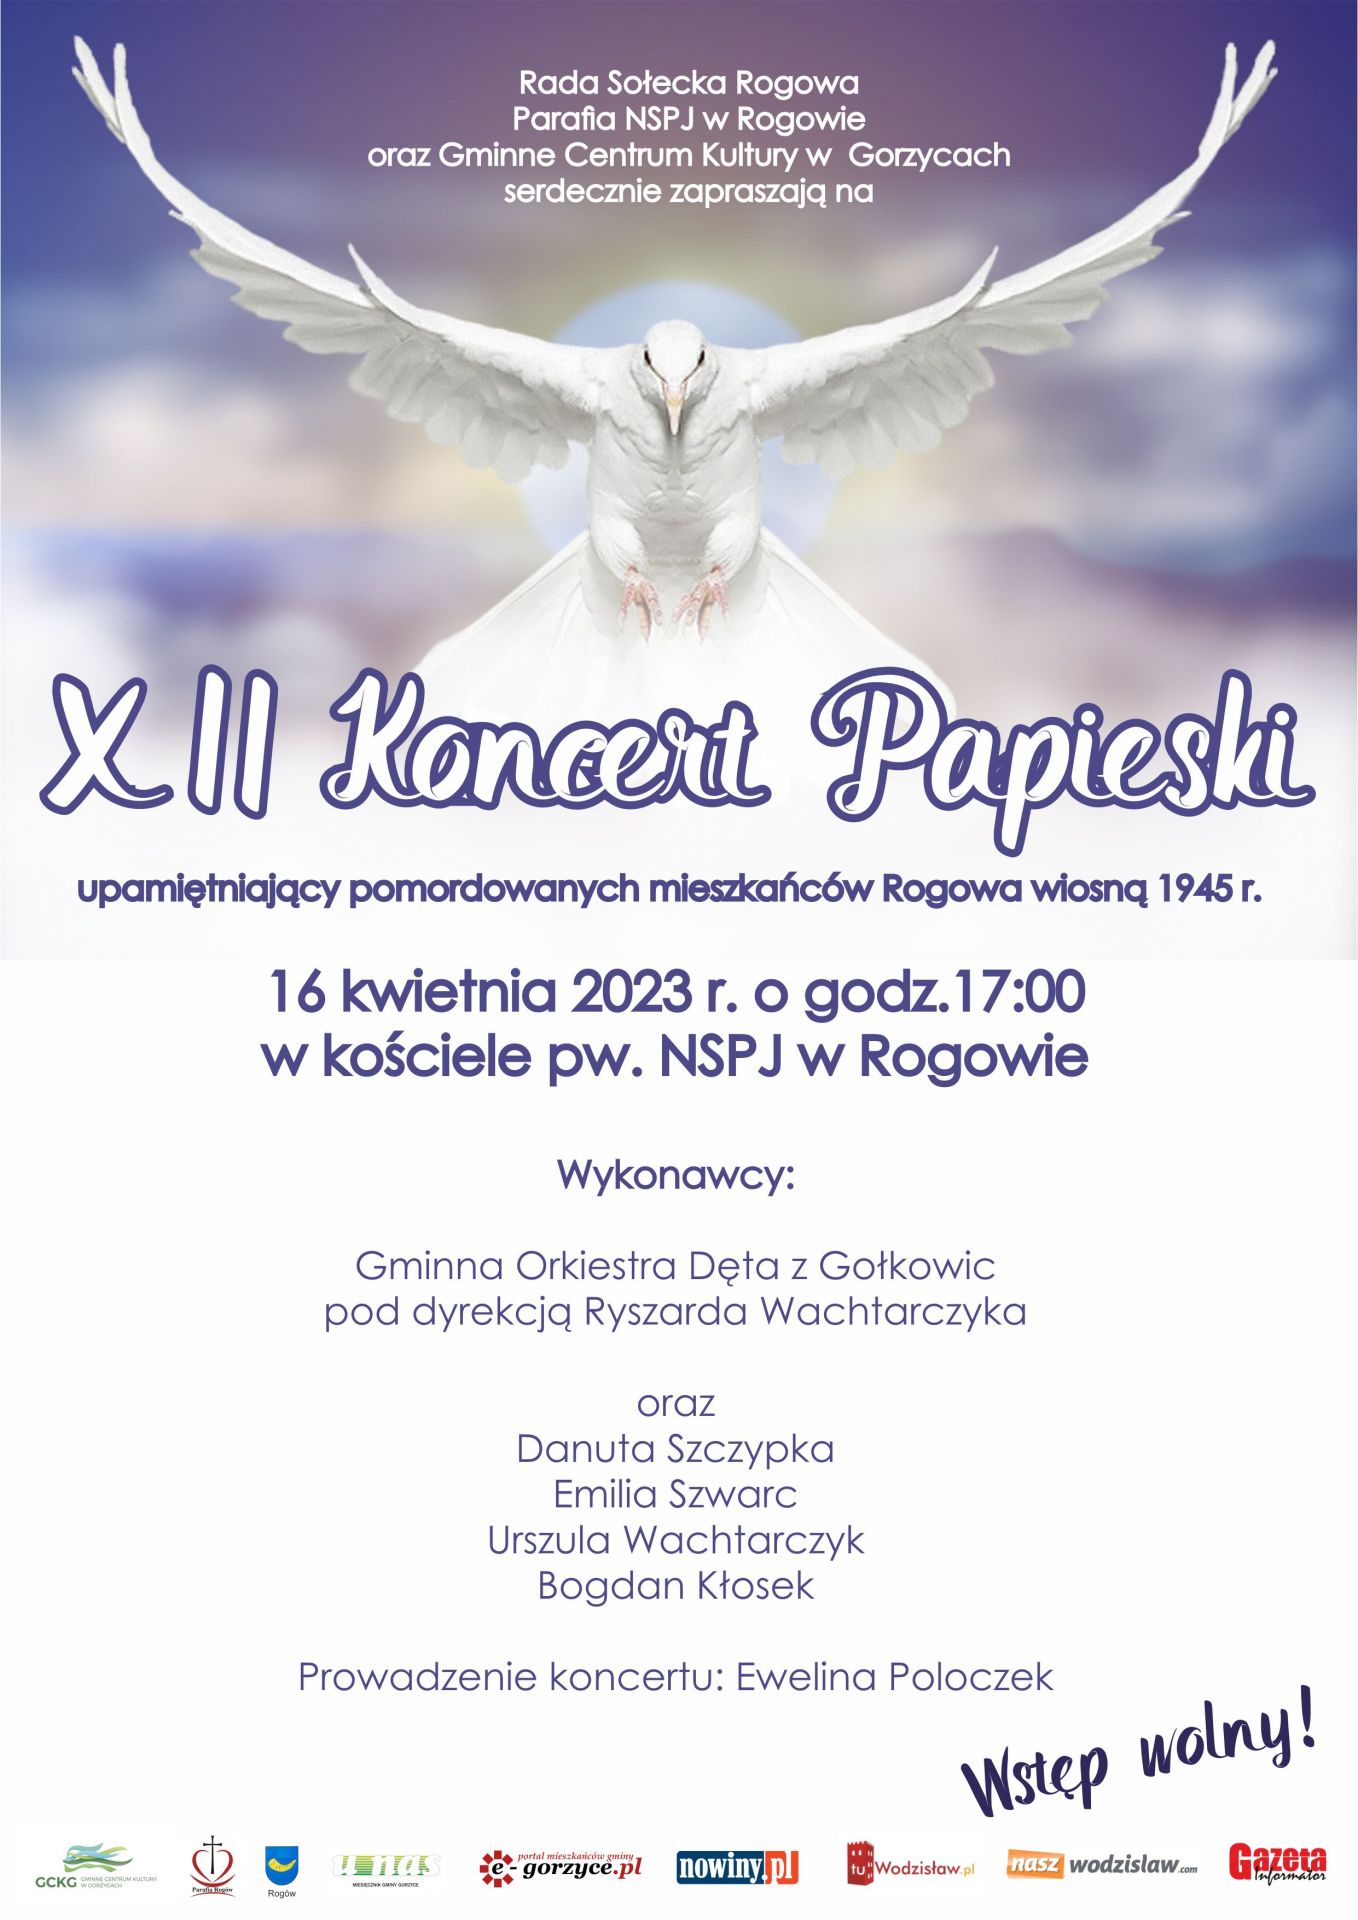 plakat koncertu papieskiego 2023